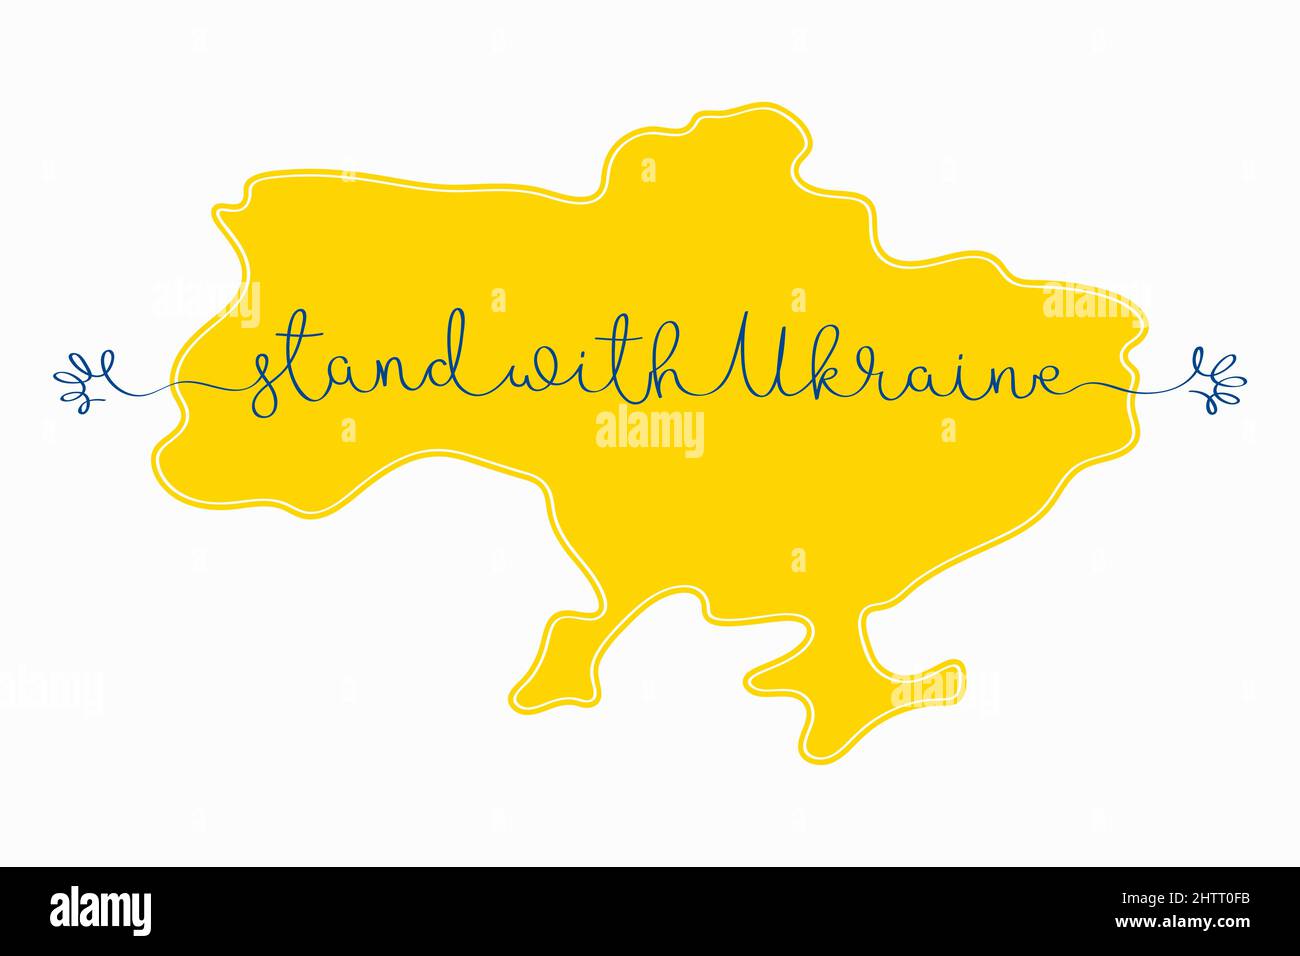 Stare con l'Ucraina. Illustrazione vettoriale della mappa Ucraina e scrittura continua su una linea con le mani astratte isolate su sfondo bianco Illustrazione Vettoriale